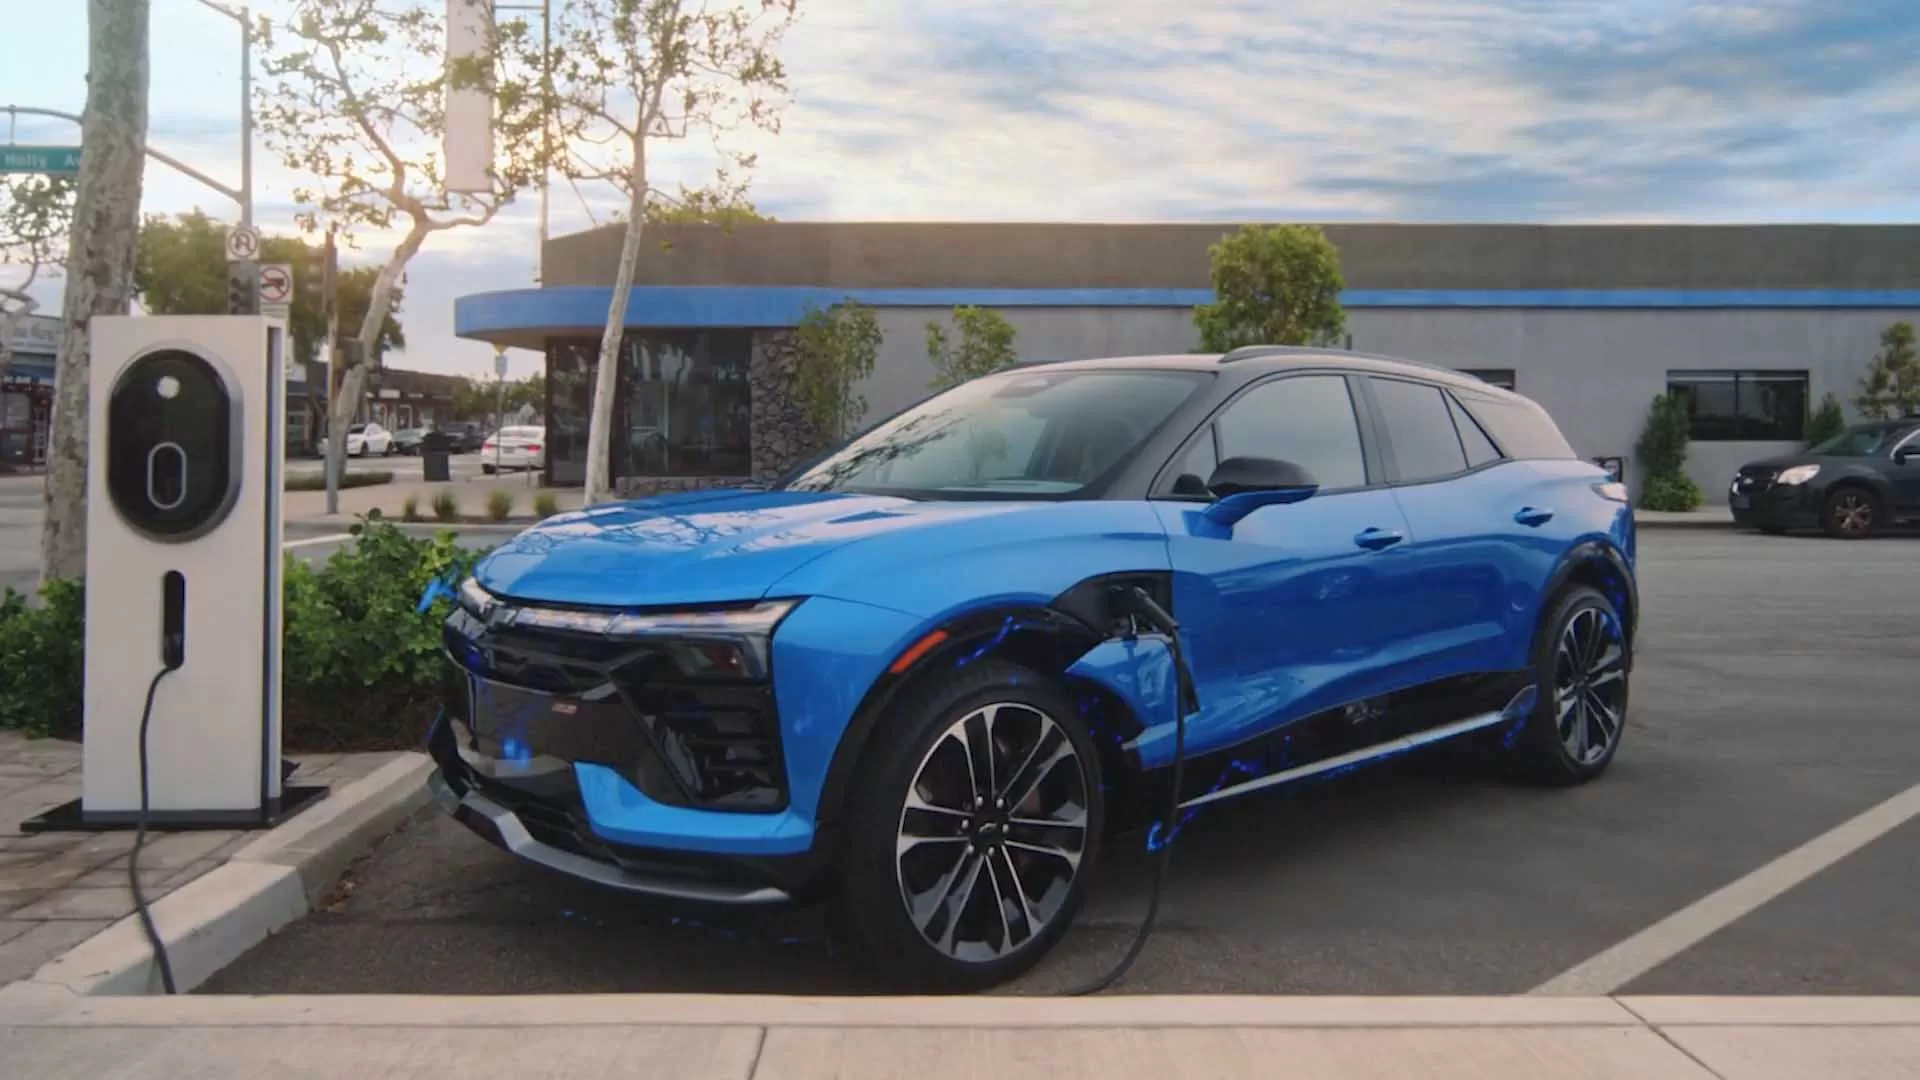 Descubra como a parceria entre a Chevrolet e o Google está transformando a maneira como interagimos com nossos veículos, tornando-os ainda mais conectados e inteligentes.